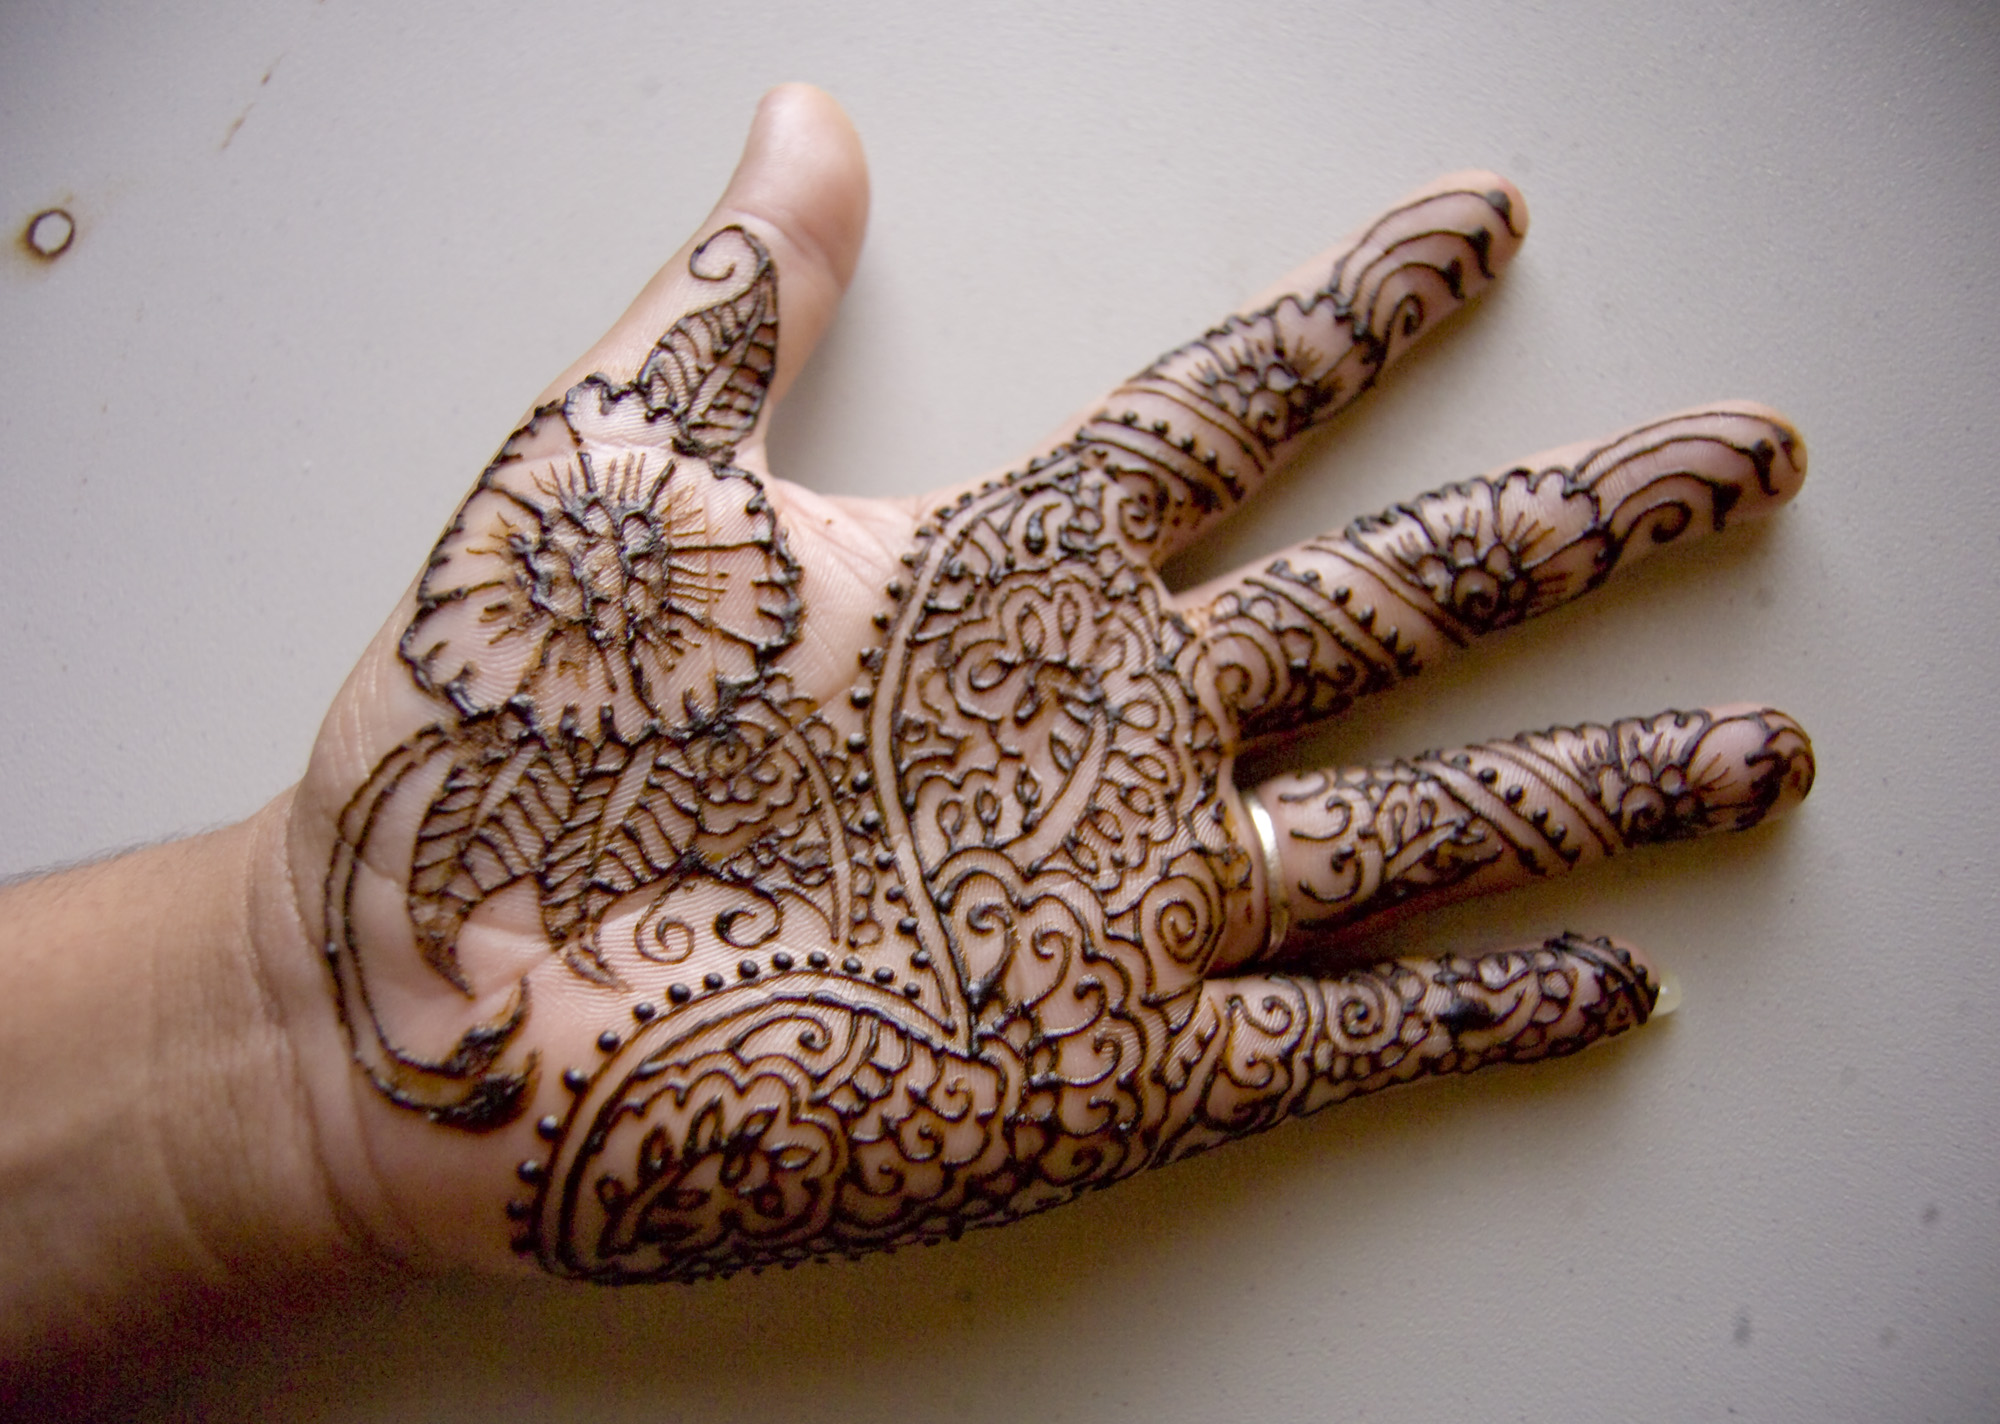 Henna Hand Designs